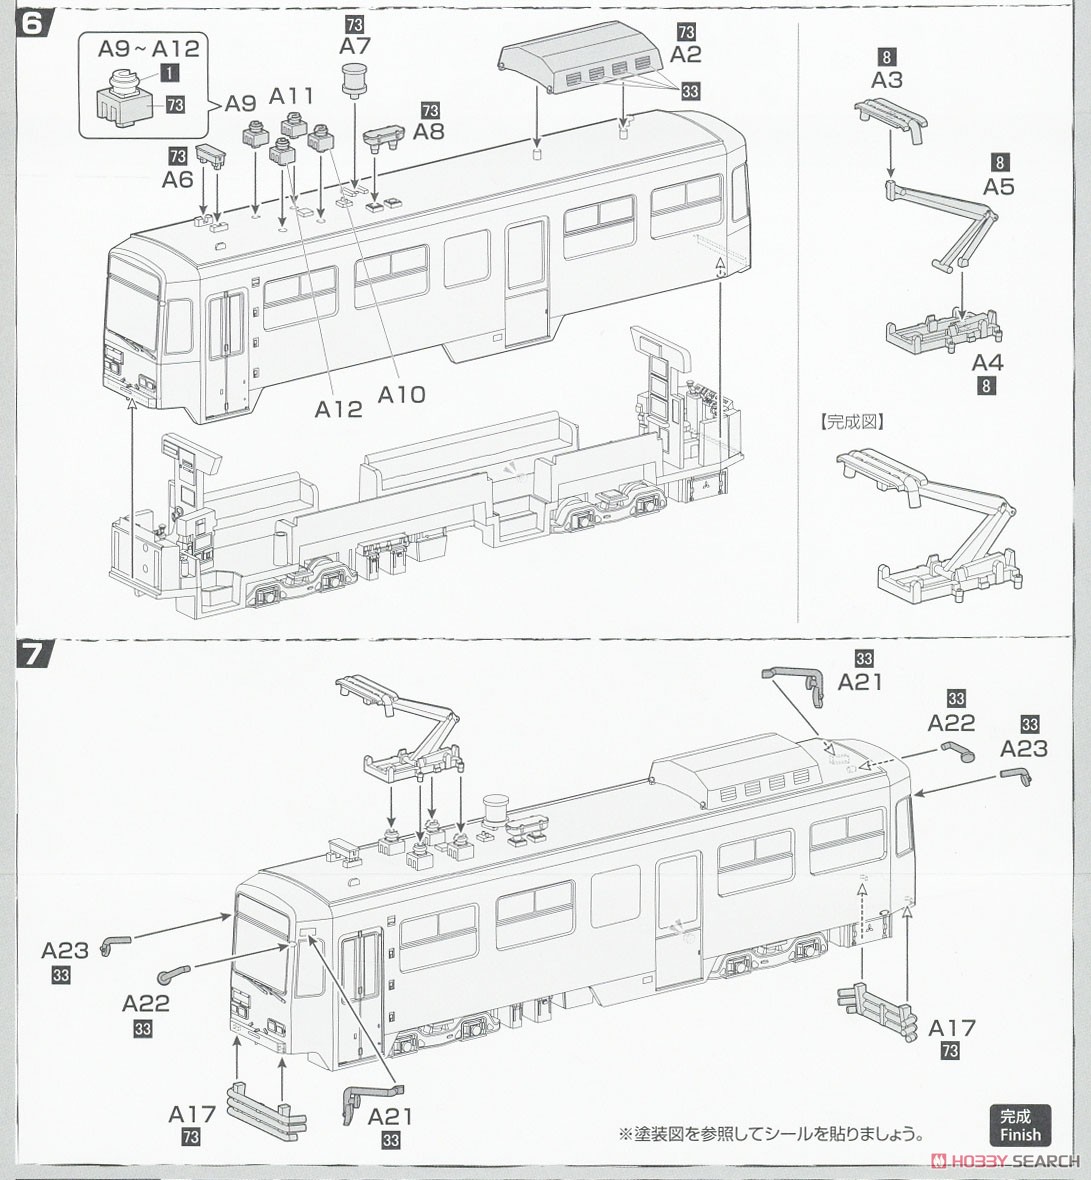 雪ミク電車 2022バージョン (標準色用3300形付き) 2両セット (組み立てキット) (鉄道模型) 設計図3